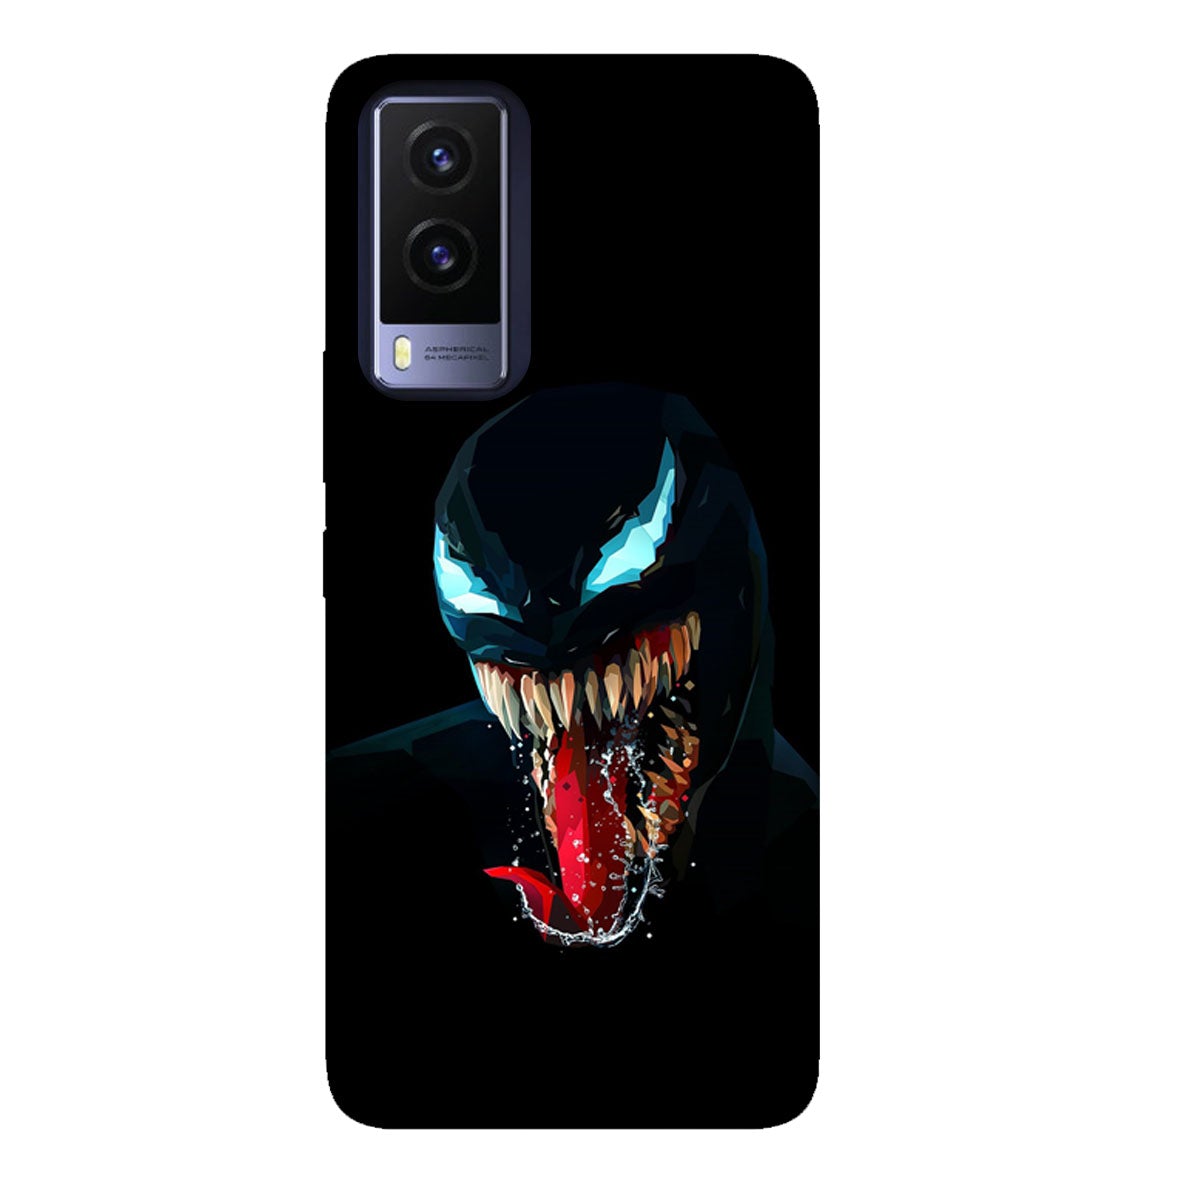 The Venom - Mobile Phone Cover - Hard Case - Vivo